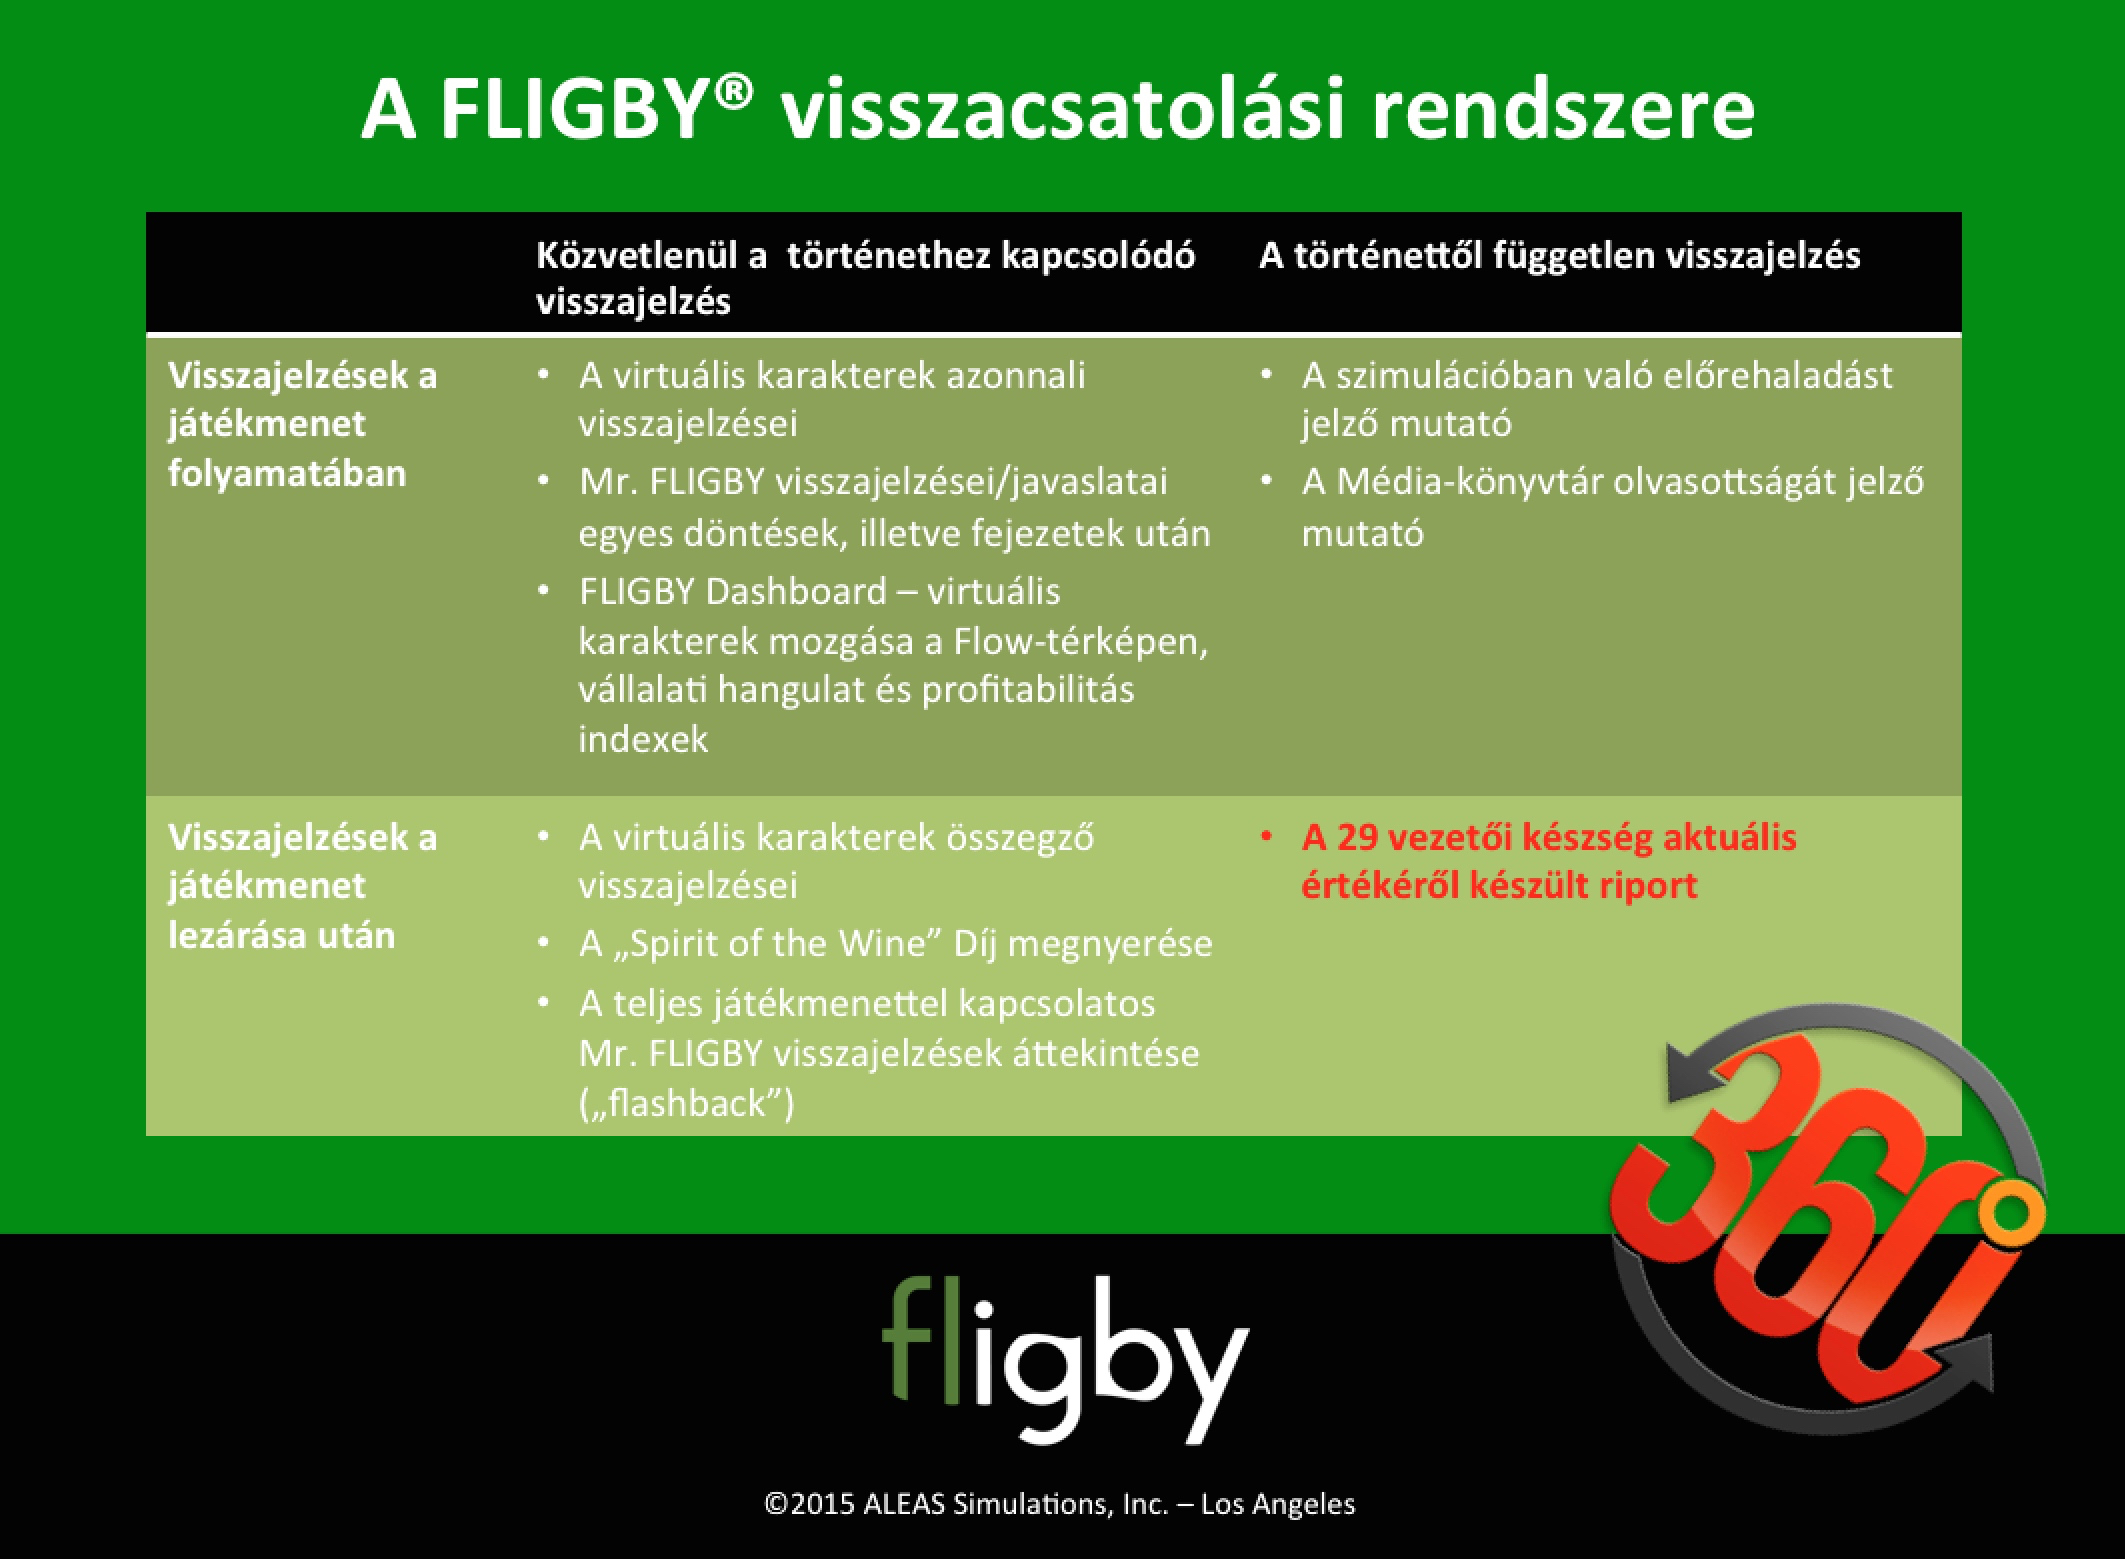 fligby-feedback-system-hu.jpg